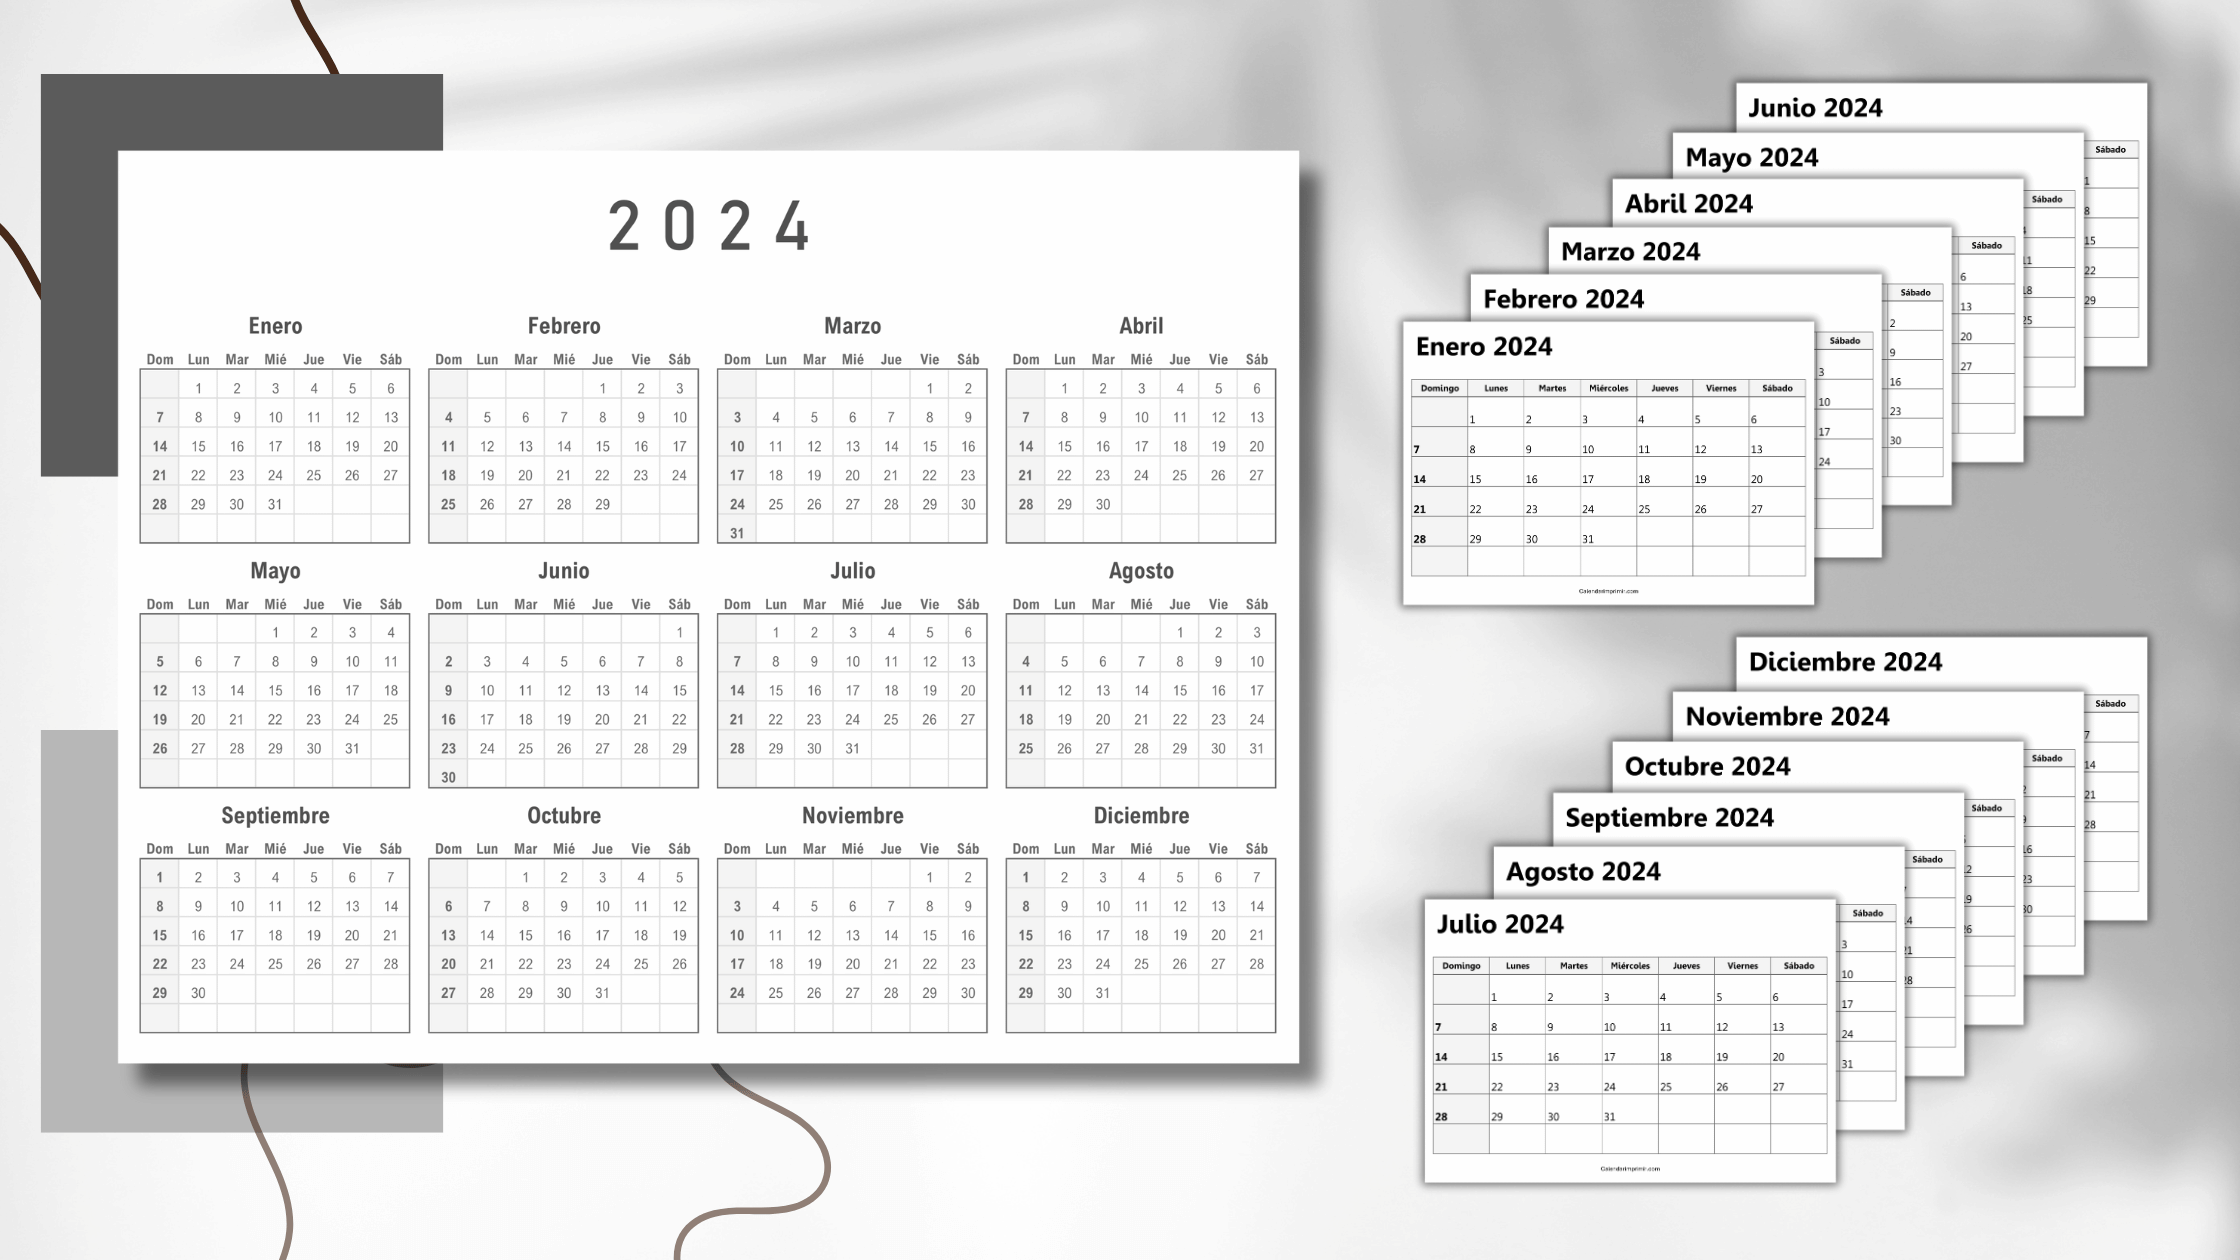 Calendario Mensual 2024 para Imprimir: Organiza Tu Año con Facilidad